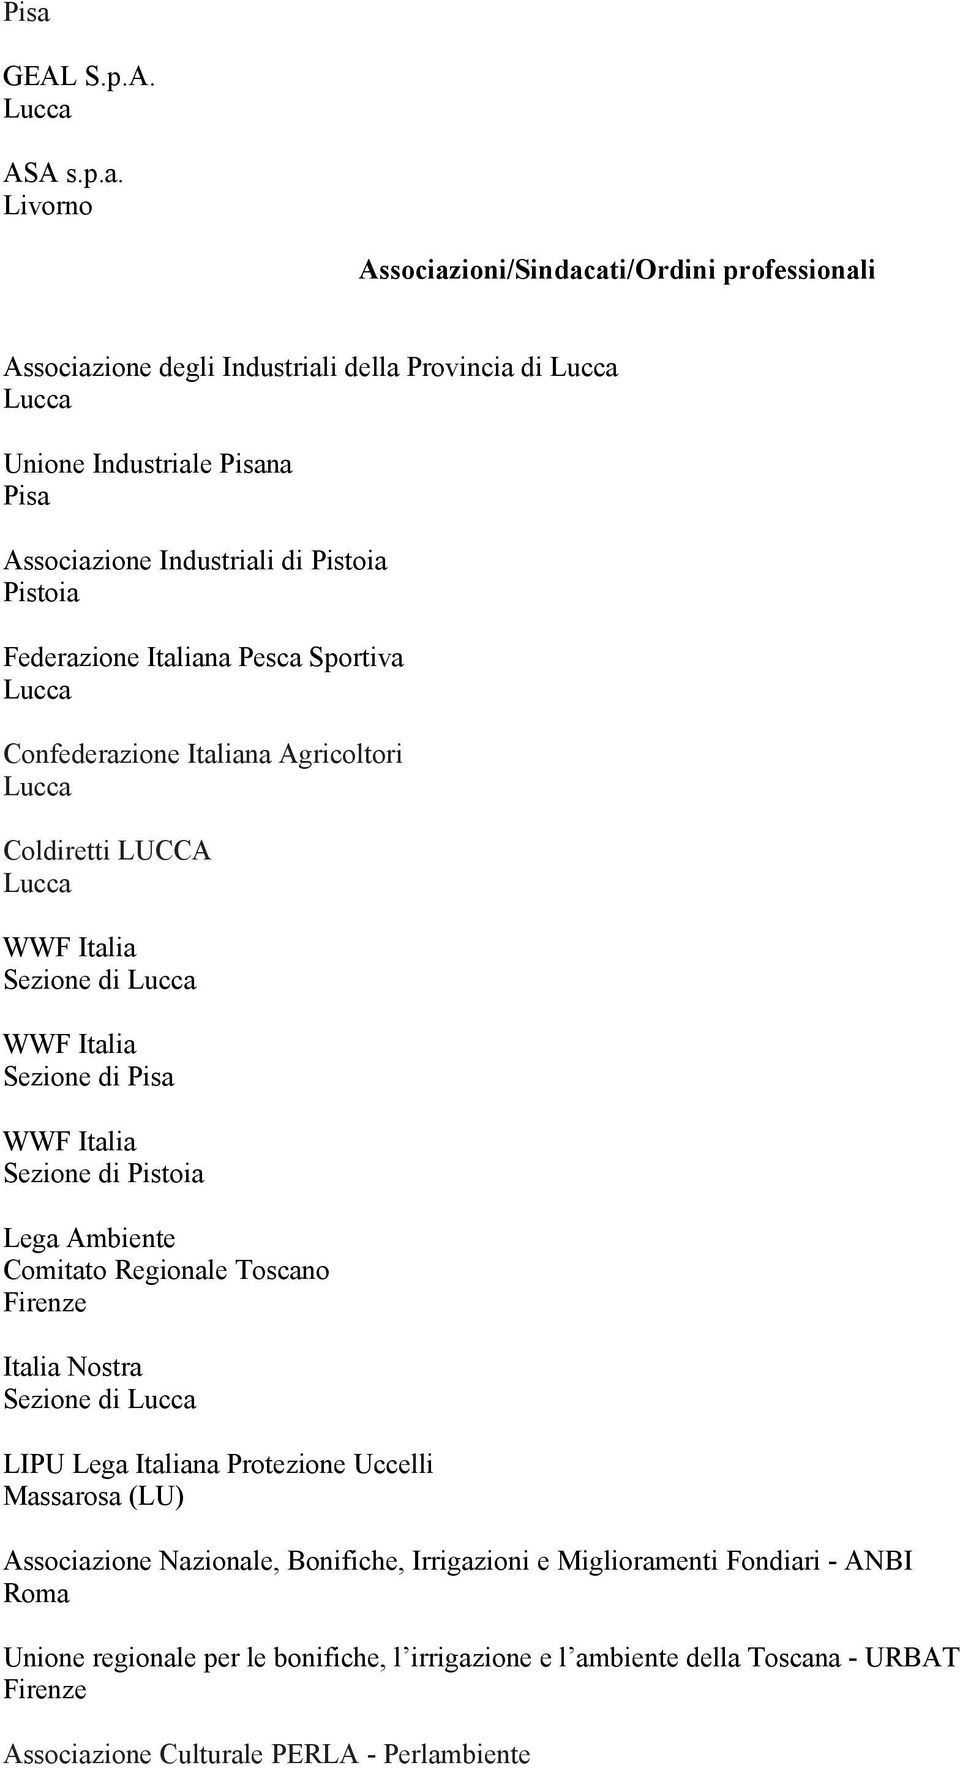 Italiana Pesca Sportiva Confederazione Italiana Agricoltori Coldiretti LUCCA WWF Italia Sezione di WWF Italia Sezione di WWF Italia Sezione di Lega Ambiente